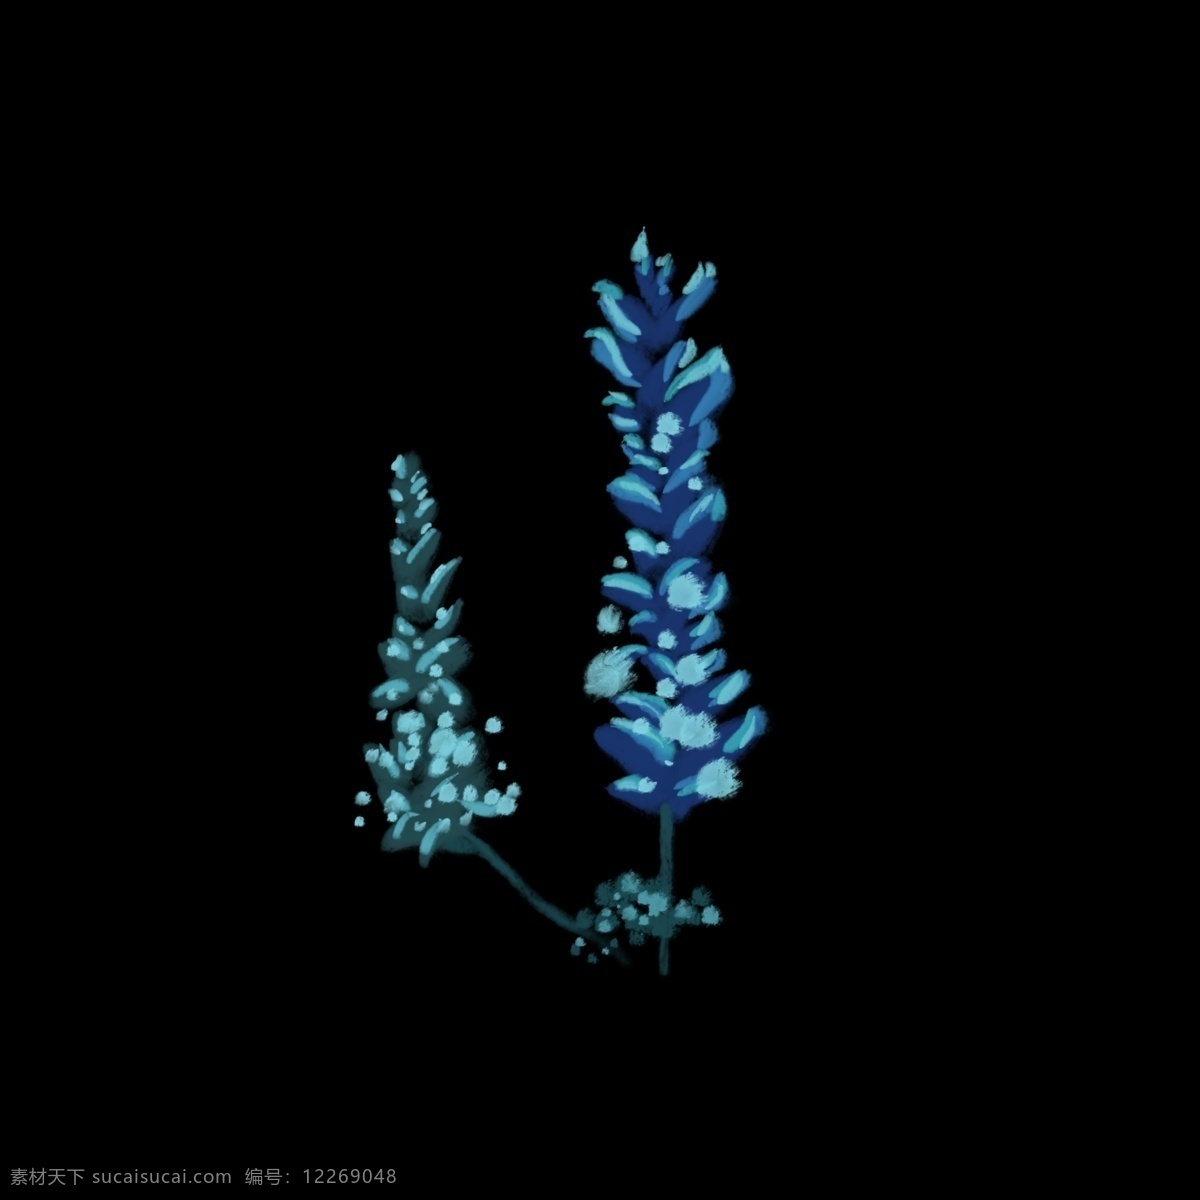 蓝色 羽扇豆 花朵 写实 鲜花 绘画 插画 写实绘画 手绘 小清新 新鲜花朵 传统装饰 唯美意境 清新自然